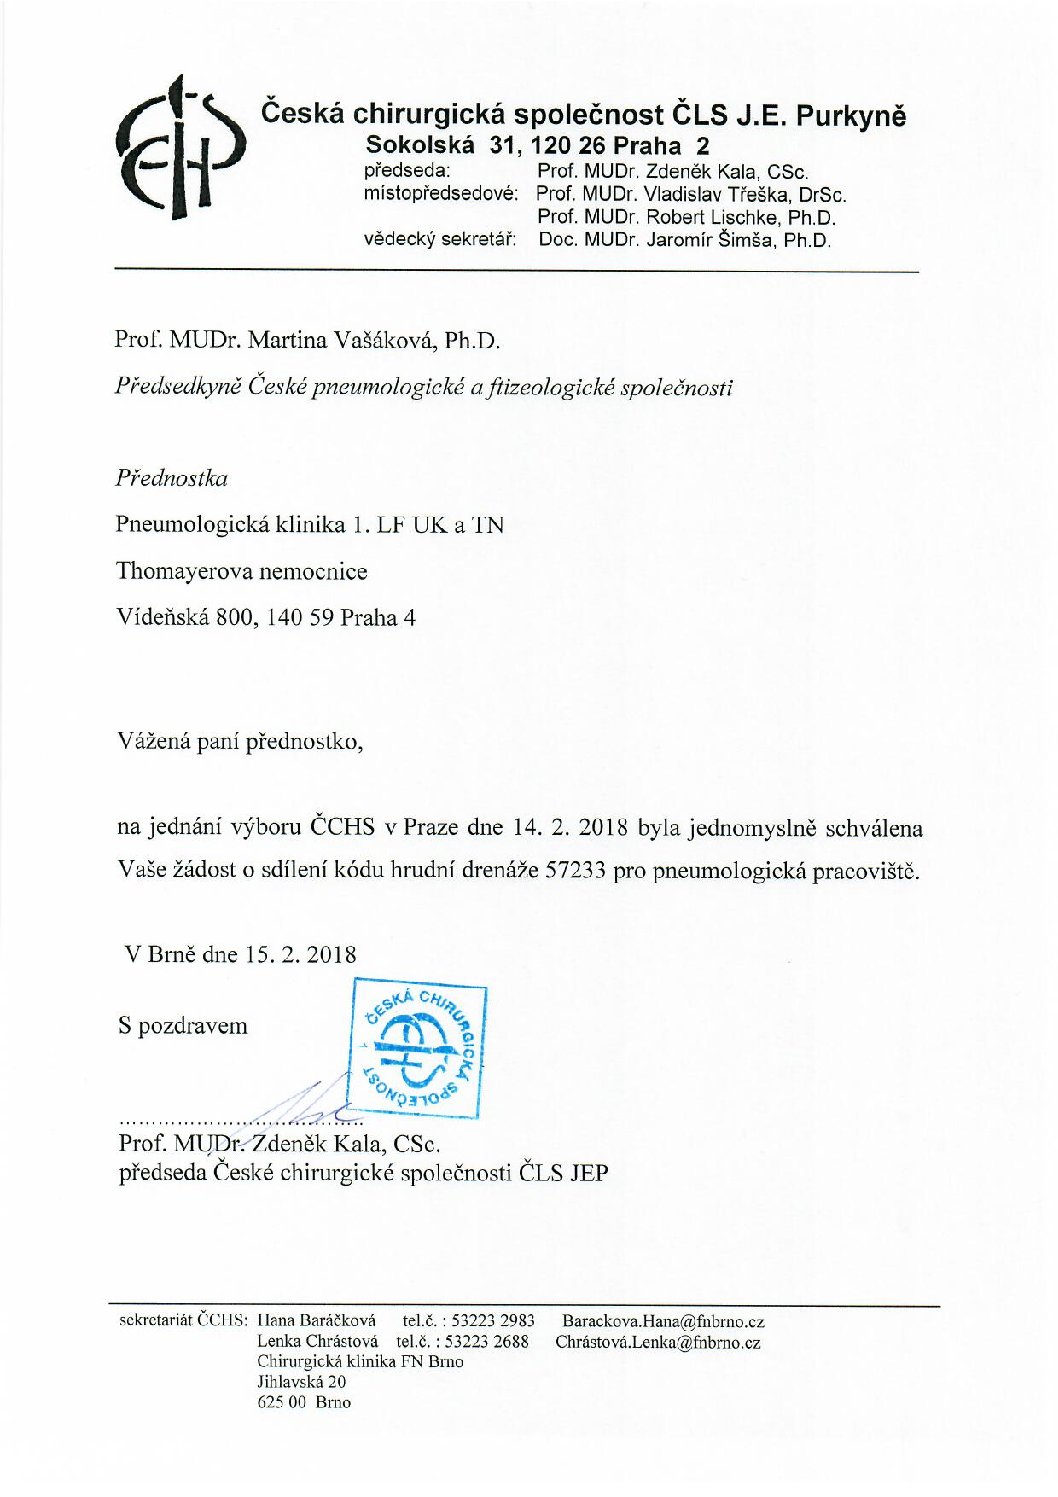 Stanovisko výboru ČCHS ČLS JEP k sdílení kódu hrudní drenáže pro pneumologická pracoviště (15. 2. 2018)